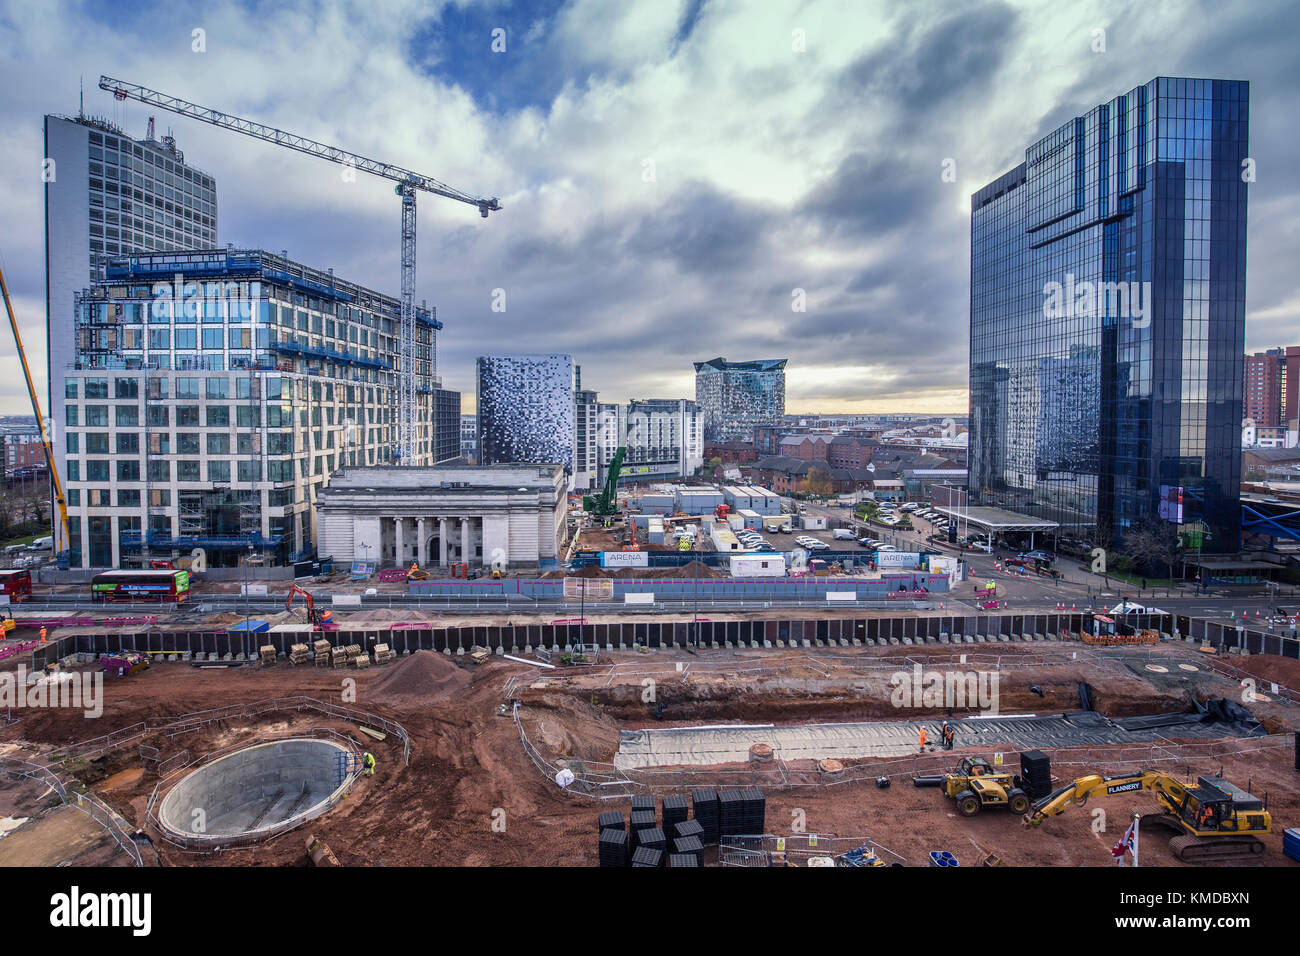 Proyecto paraíso, regeneración urbana obra en progreso, visión de la biblioteca Foto de stock